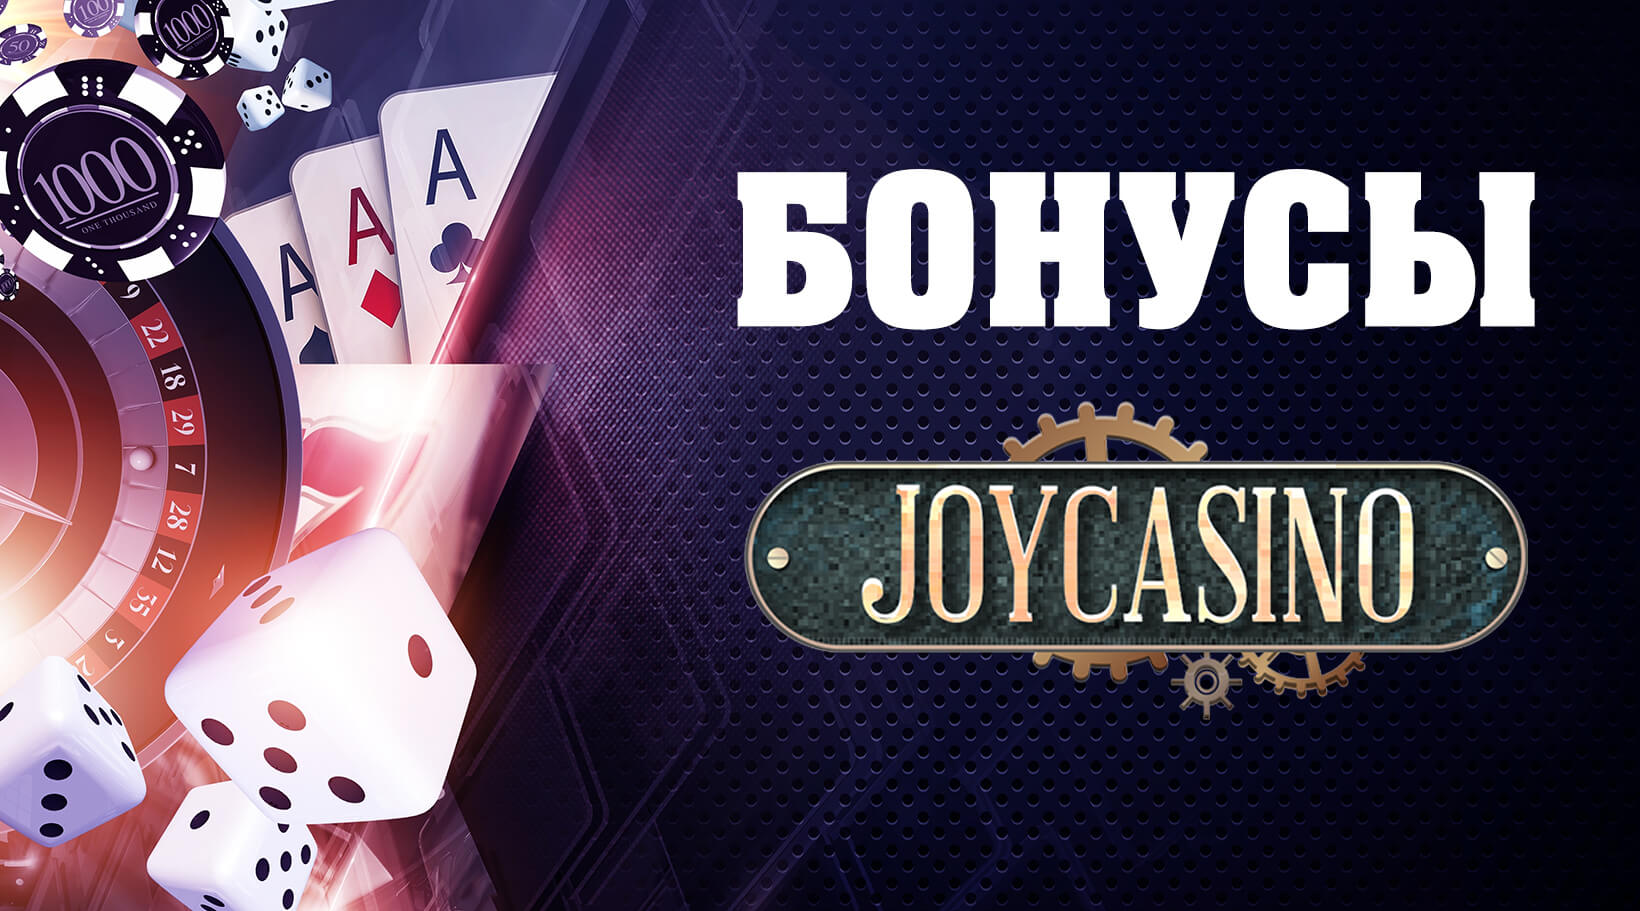 Joy casino играть